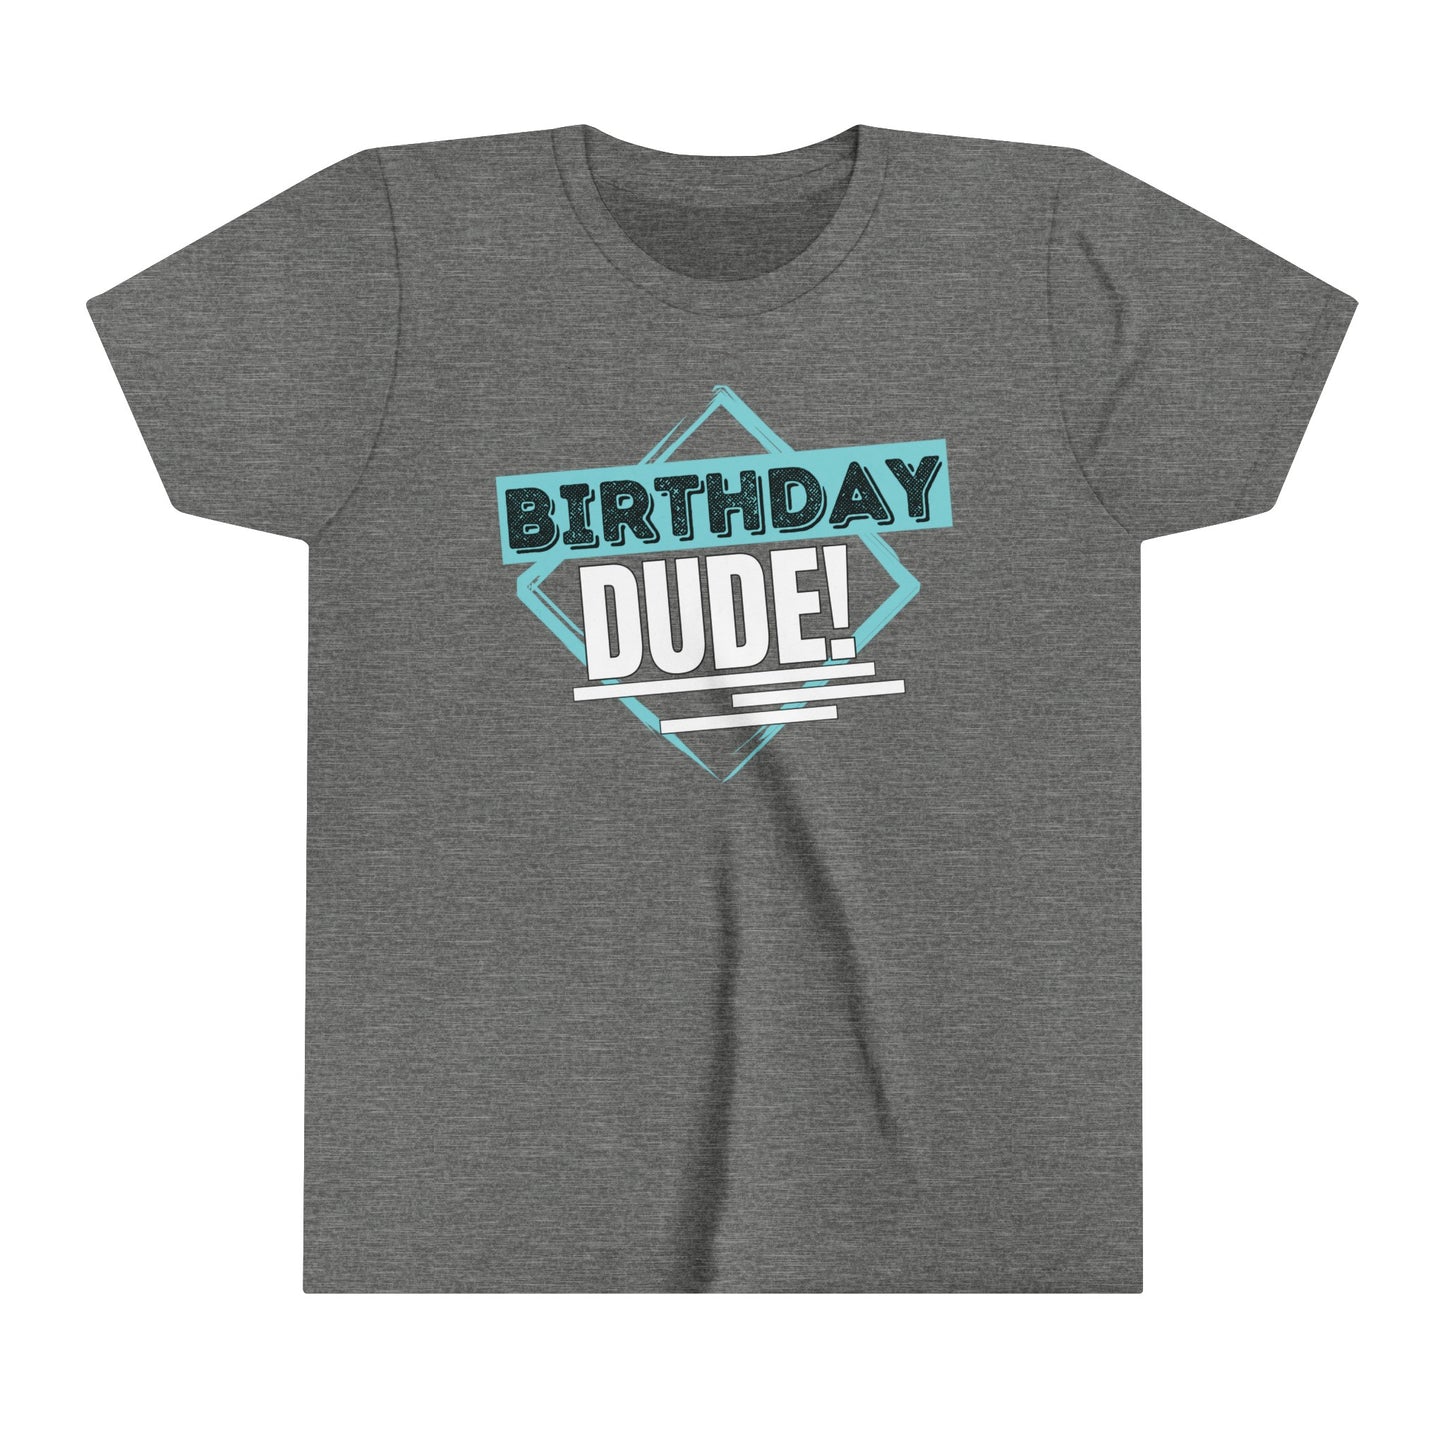 Birthday Dude T-Shirt,